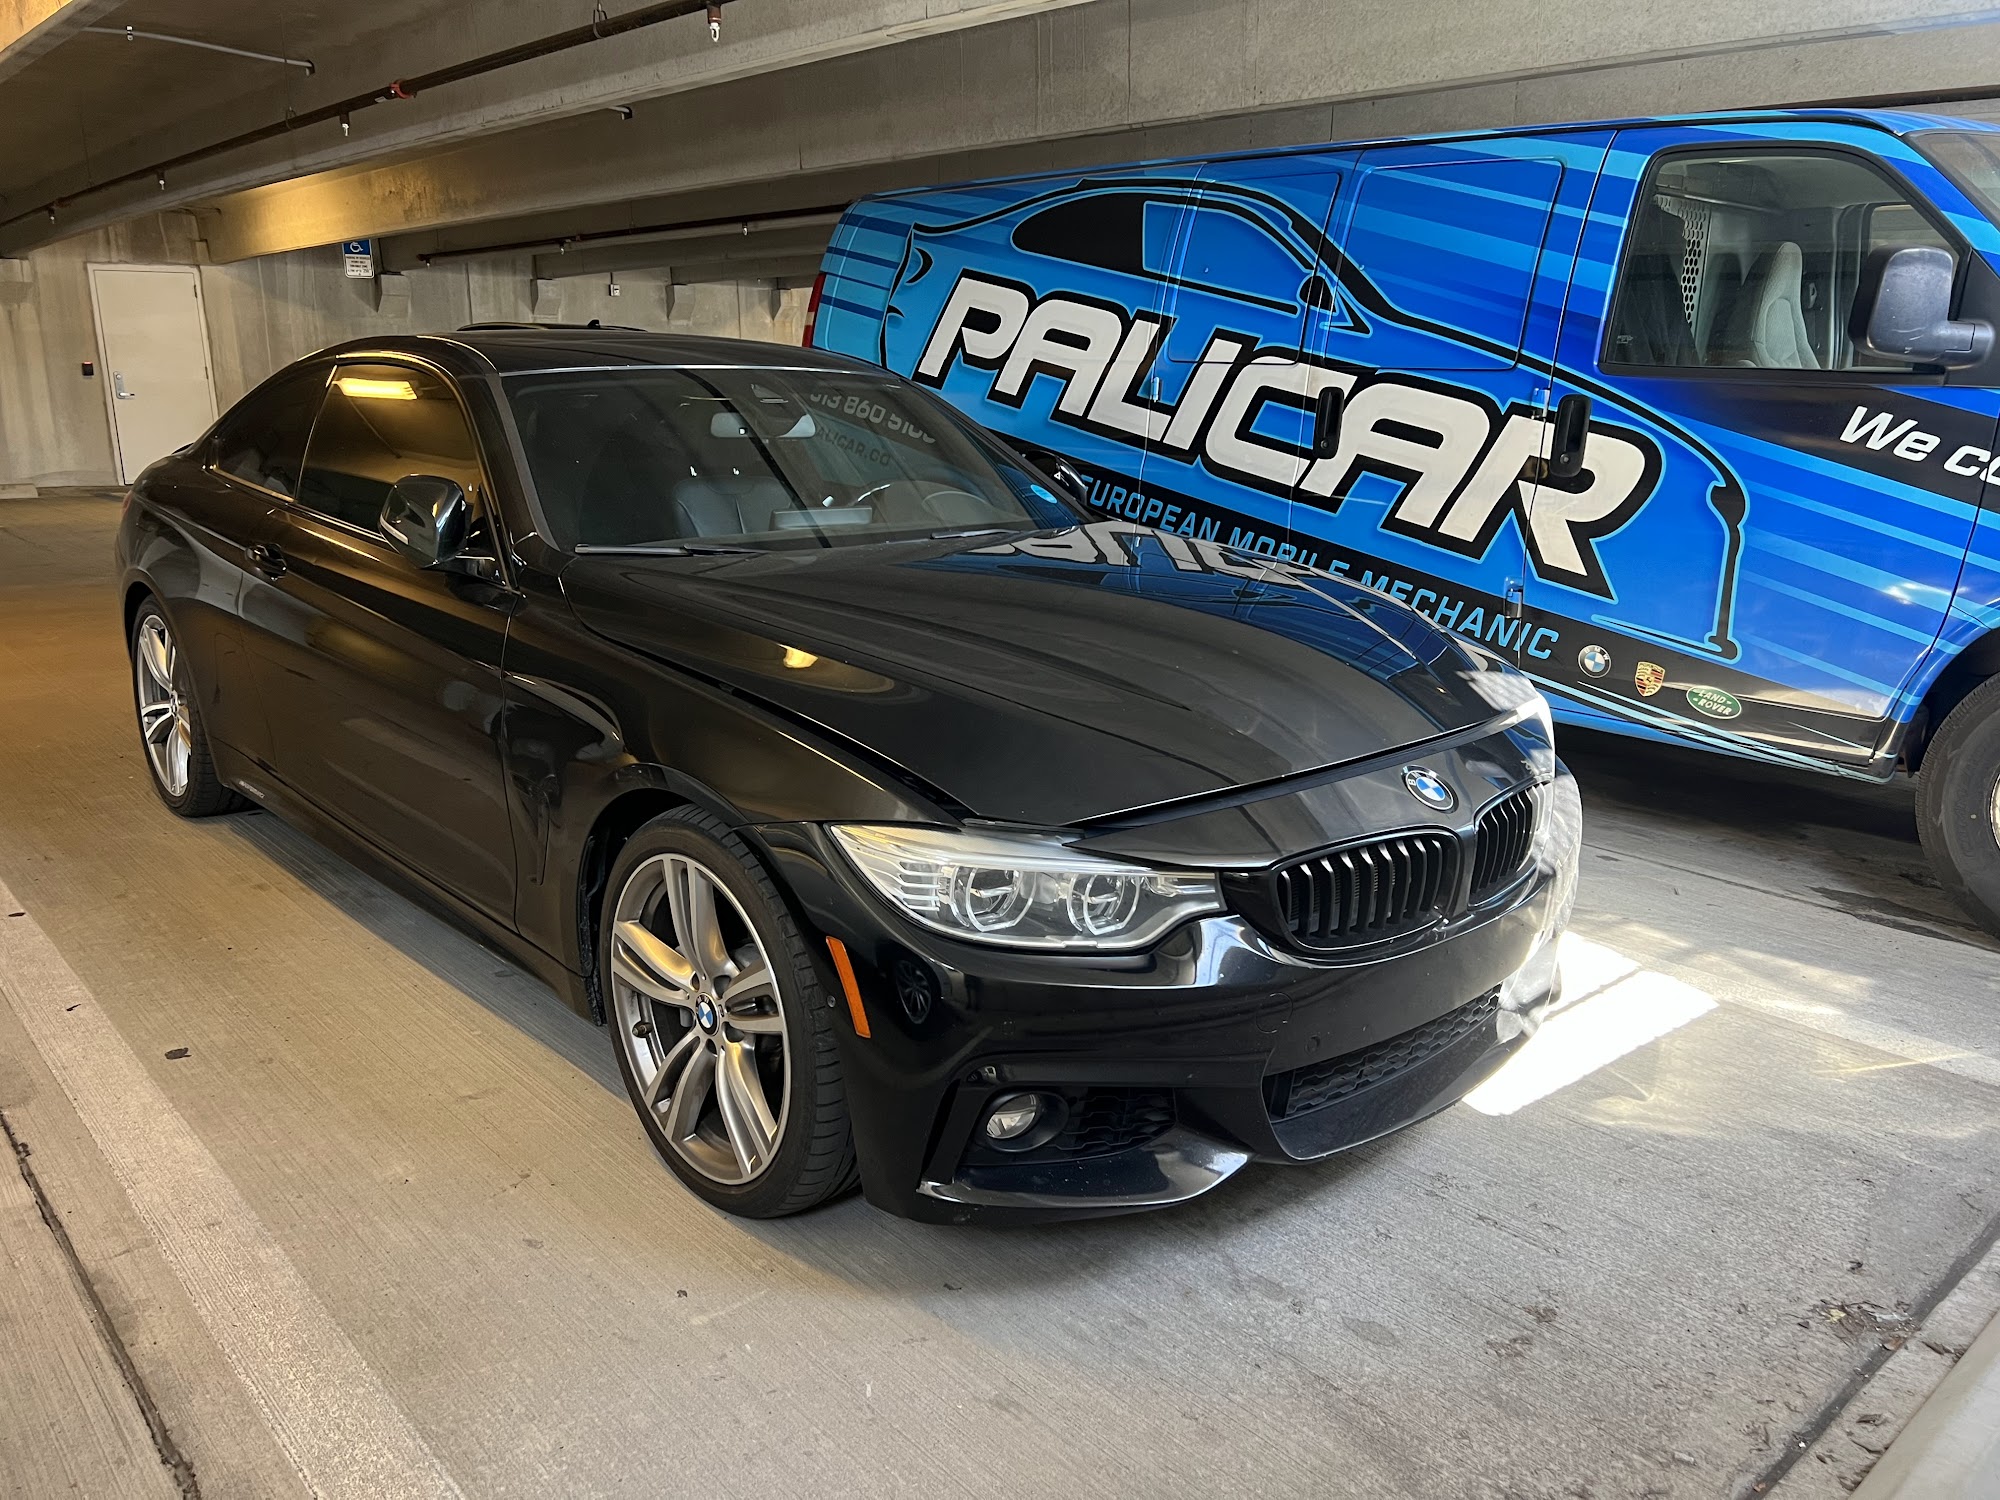 Palicar - BMW European Mobile Mechanic